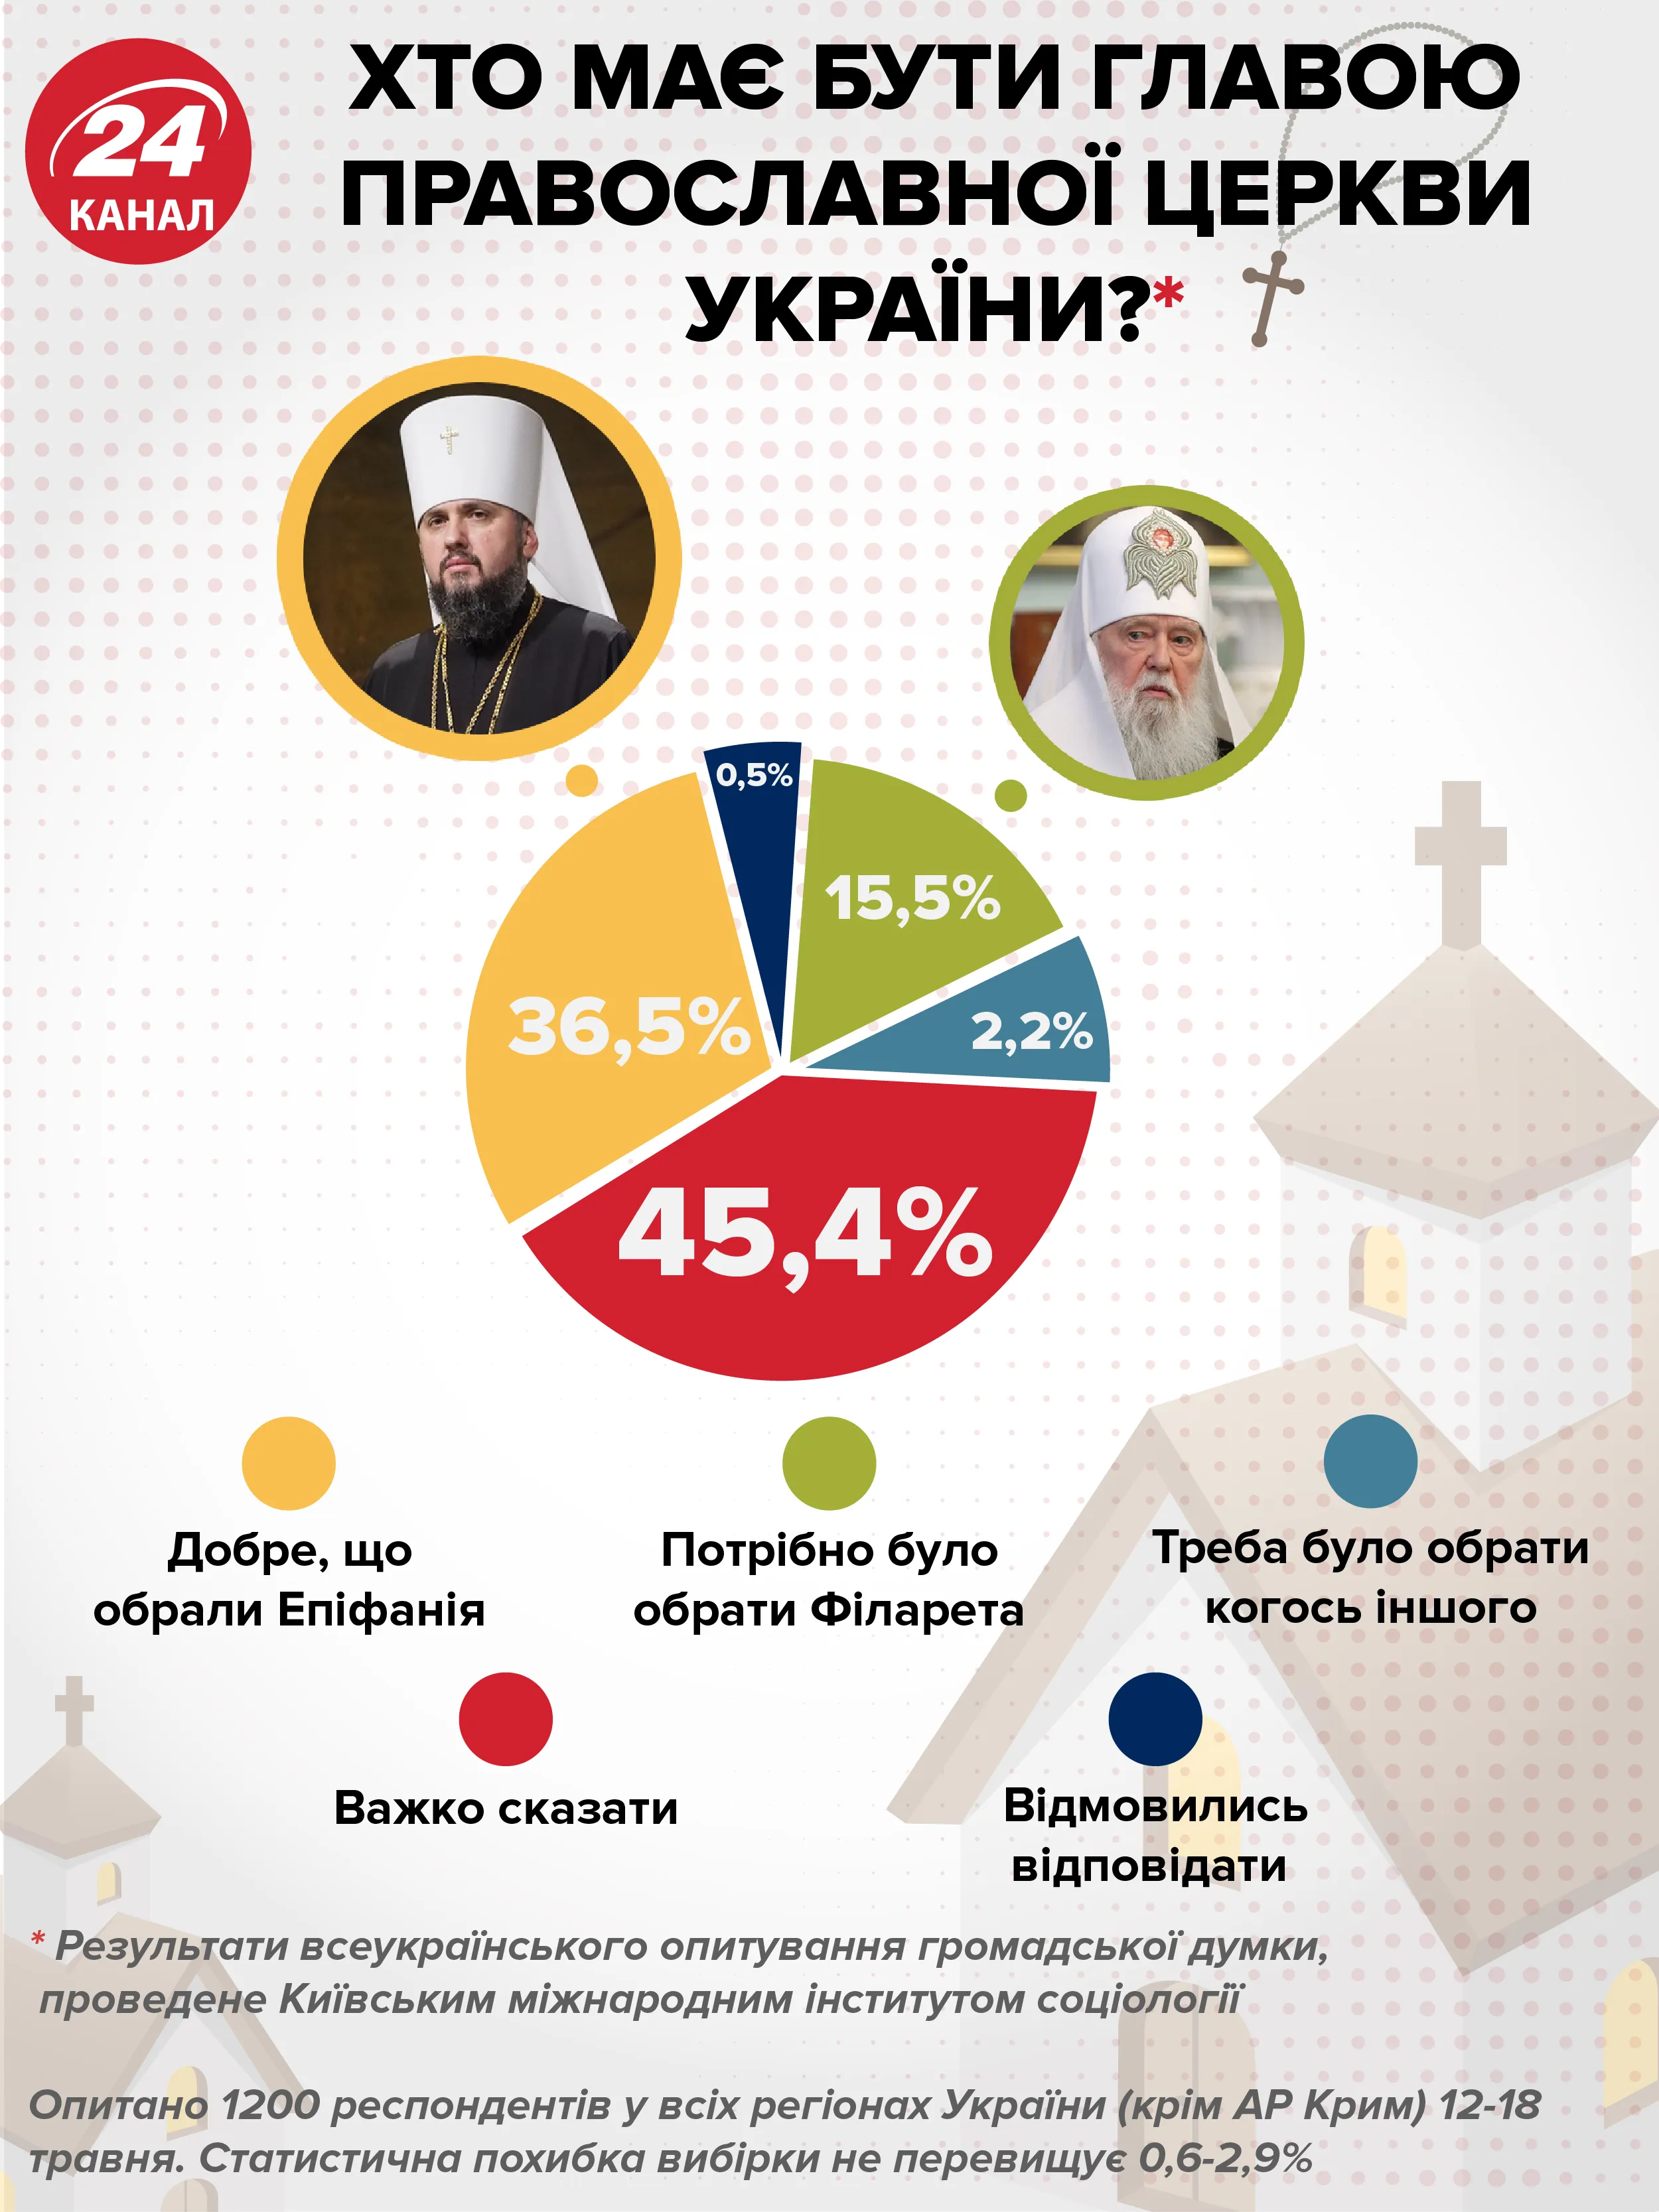 Хто має очолювати Православну церкву України